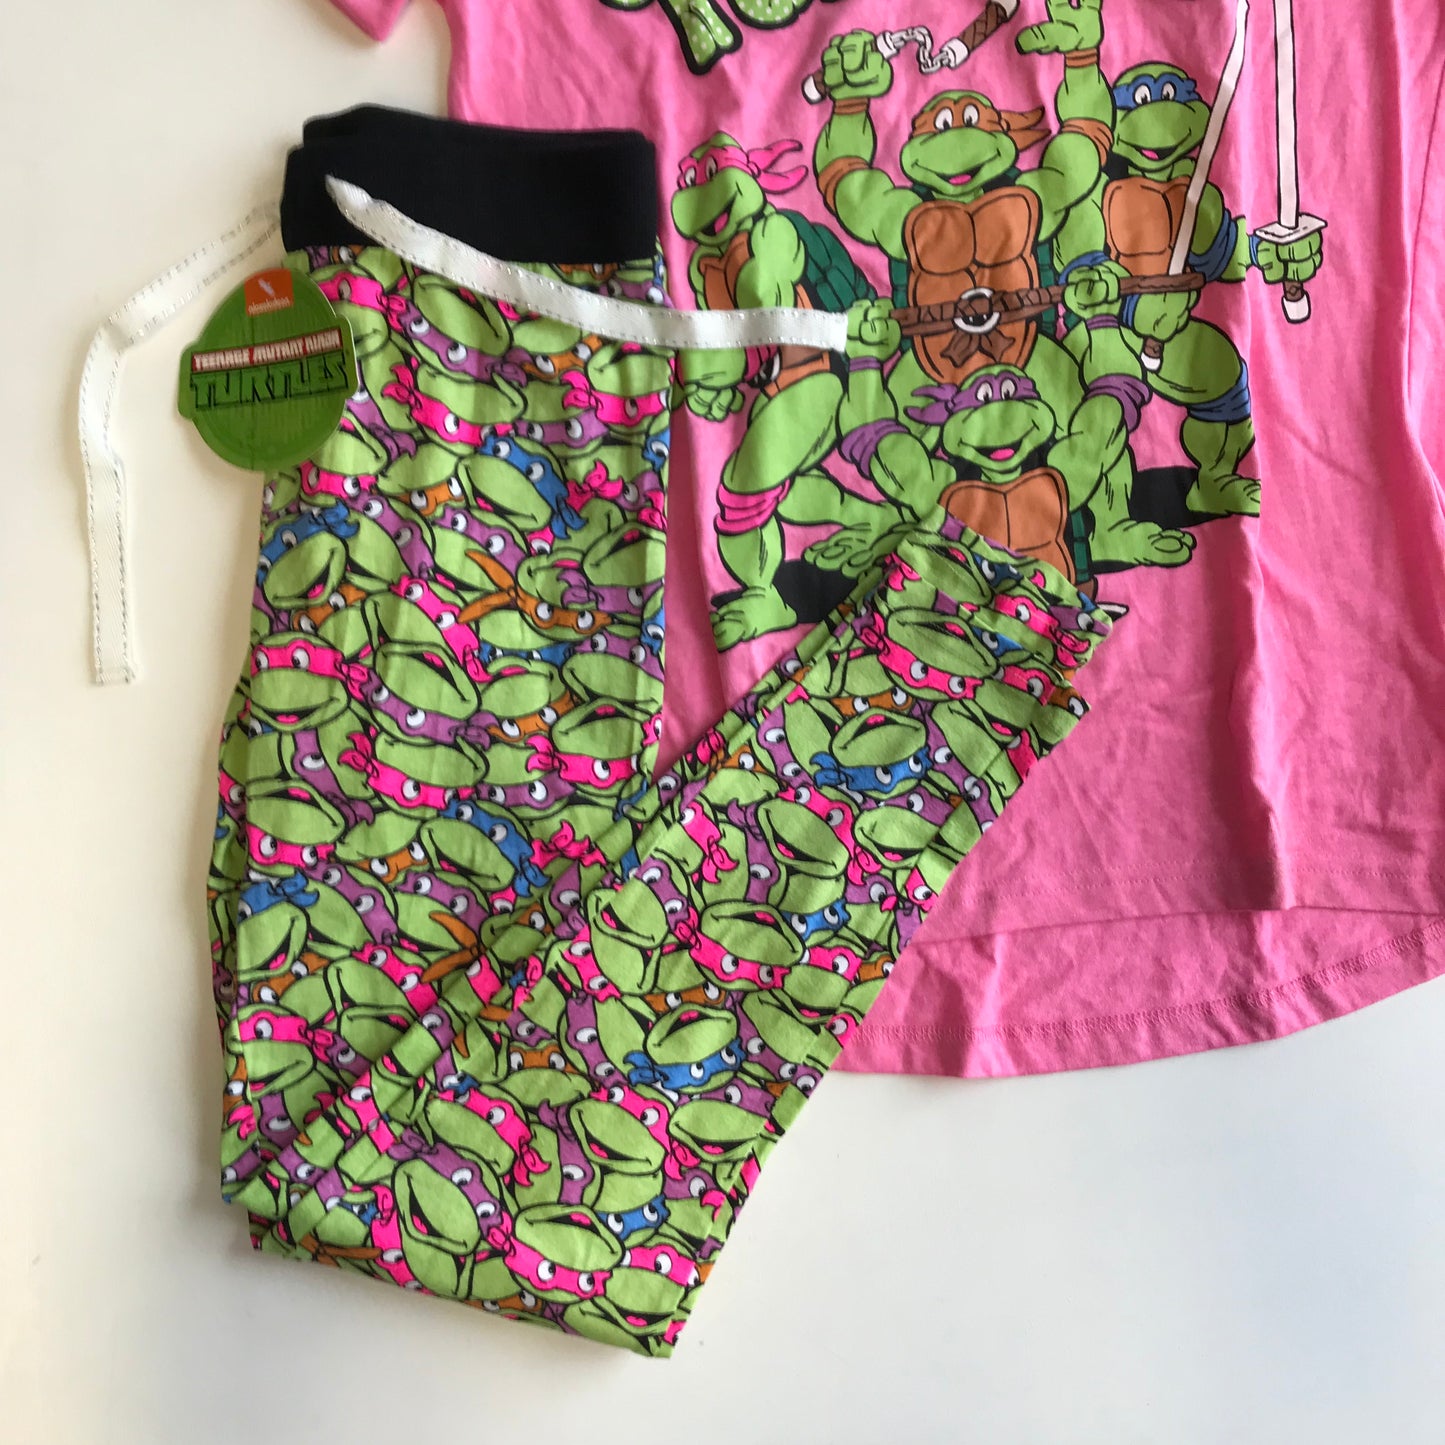 Ninja Turtle Pyjama Set Women's Size 6-8